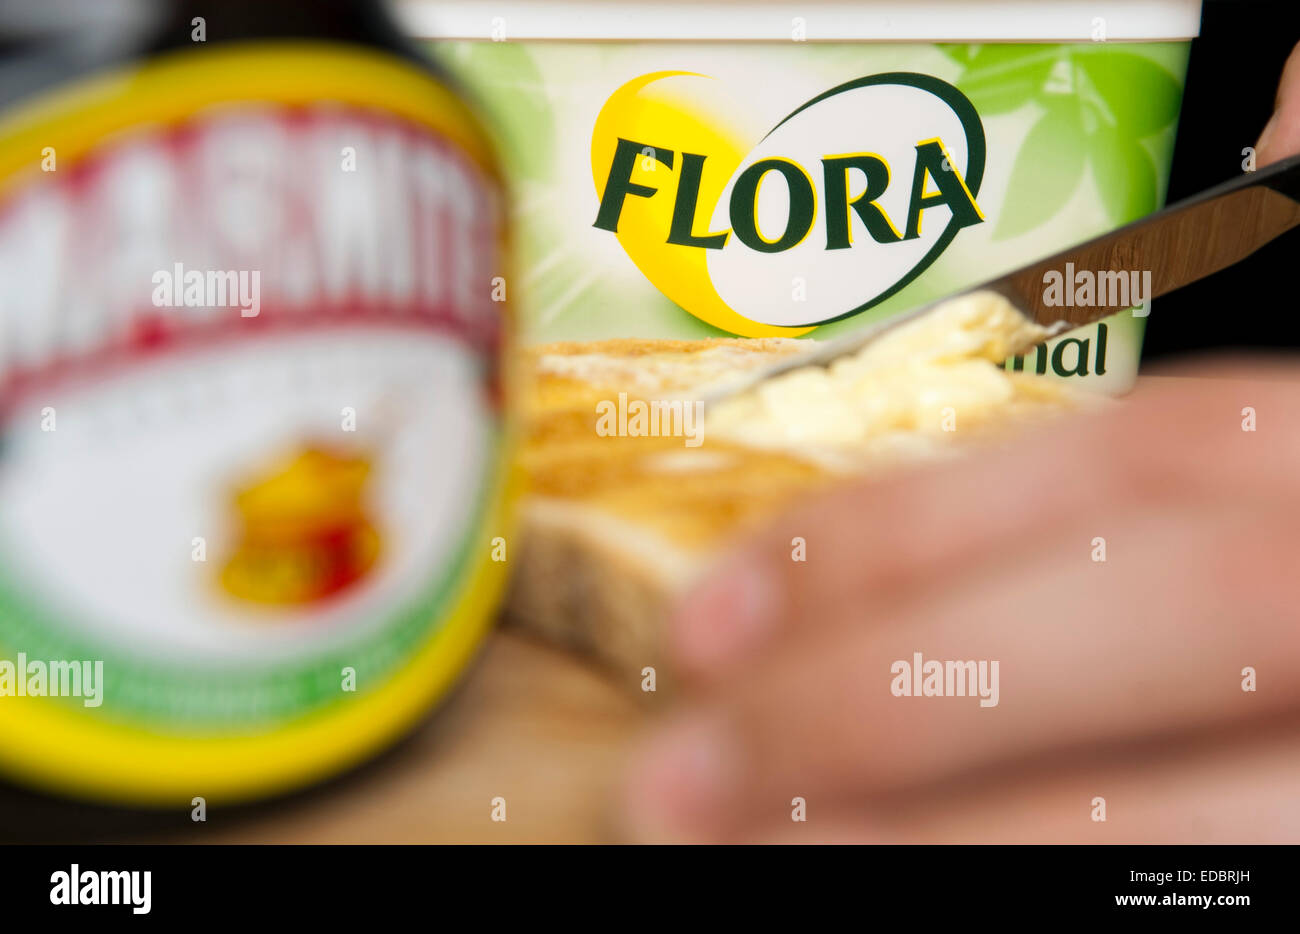 Image d'illustration de la marmite et la flore propagation Original, deux produits alimentaires Unilever. Banque D'Images